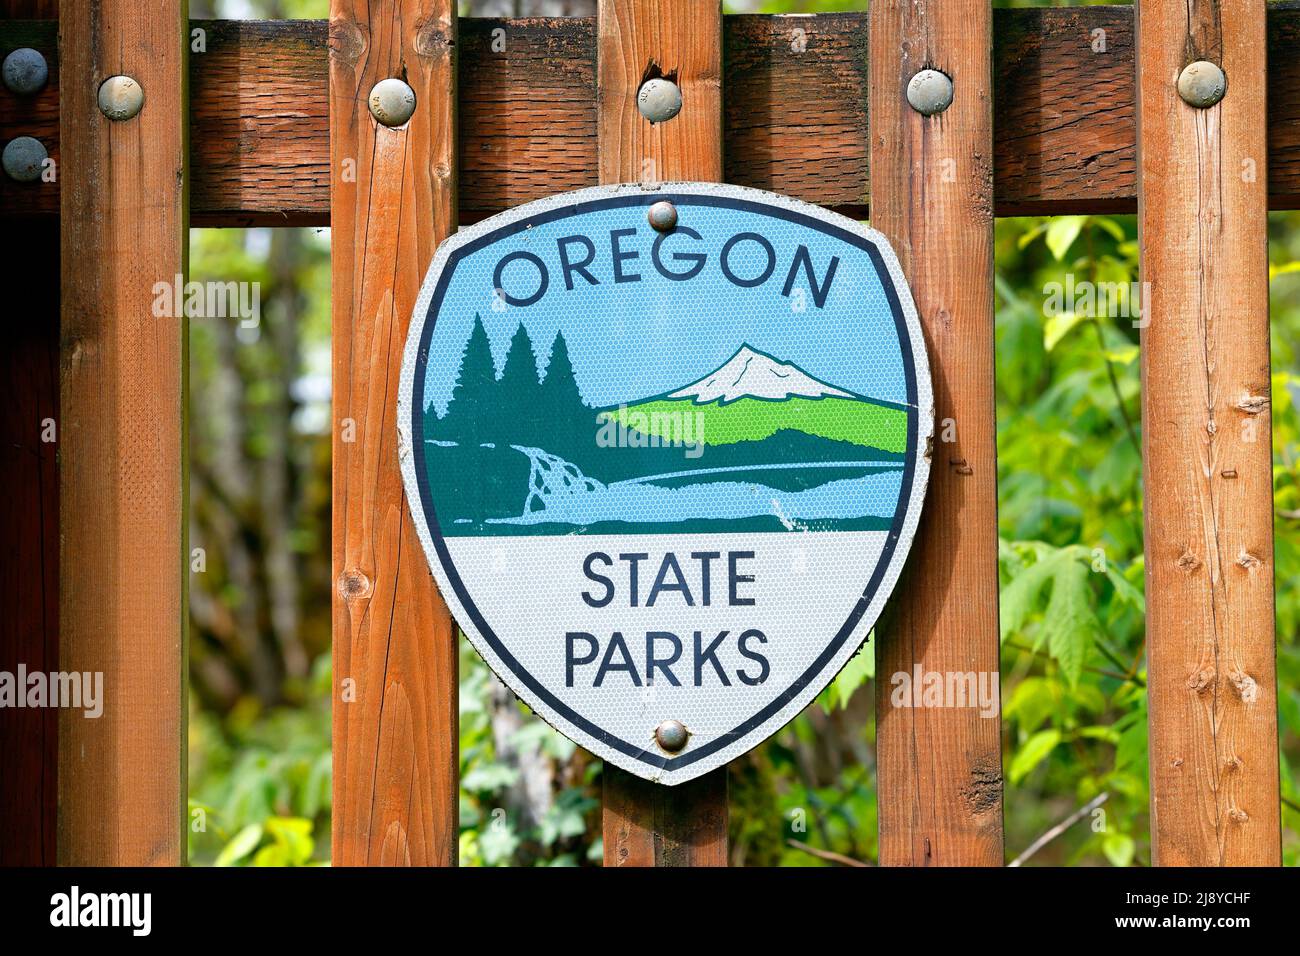 Señalización de los Parques Estatales de Oregón en un parque estatal del estado de Oregón. El logotipo cuenta con Mount Hood, cascadas y bosques. Foto de stock